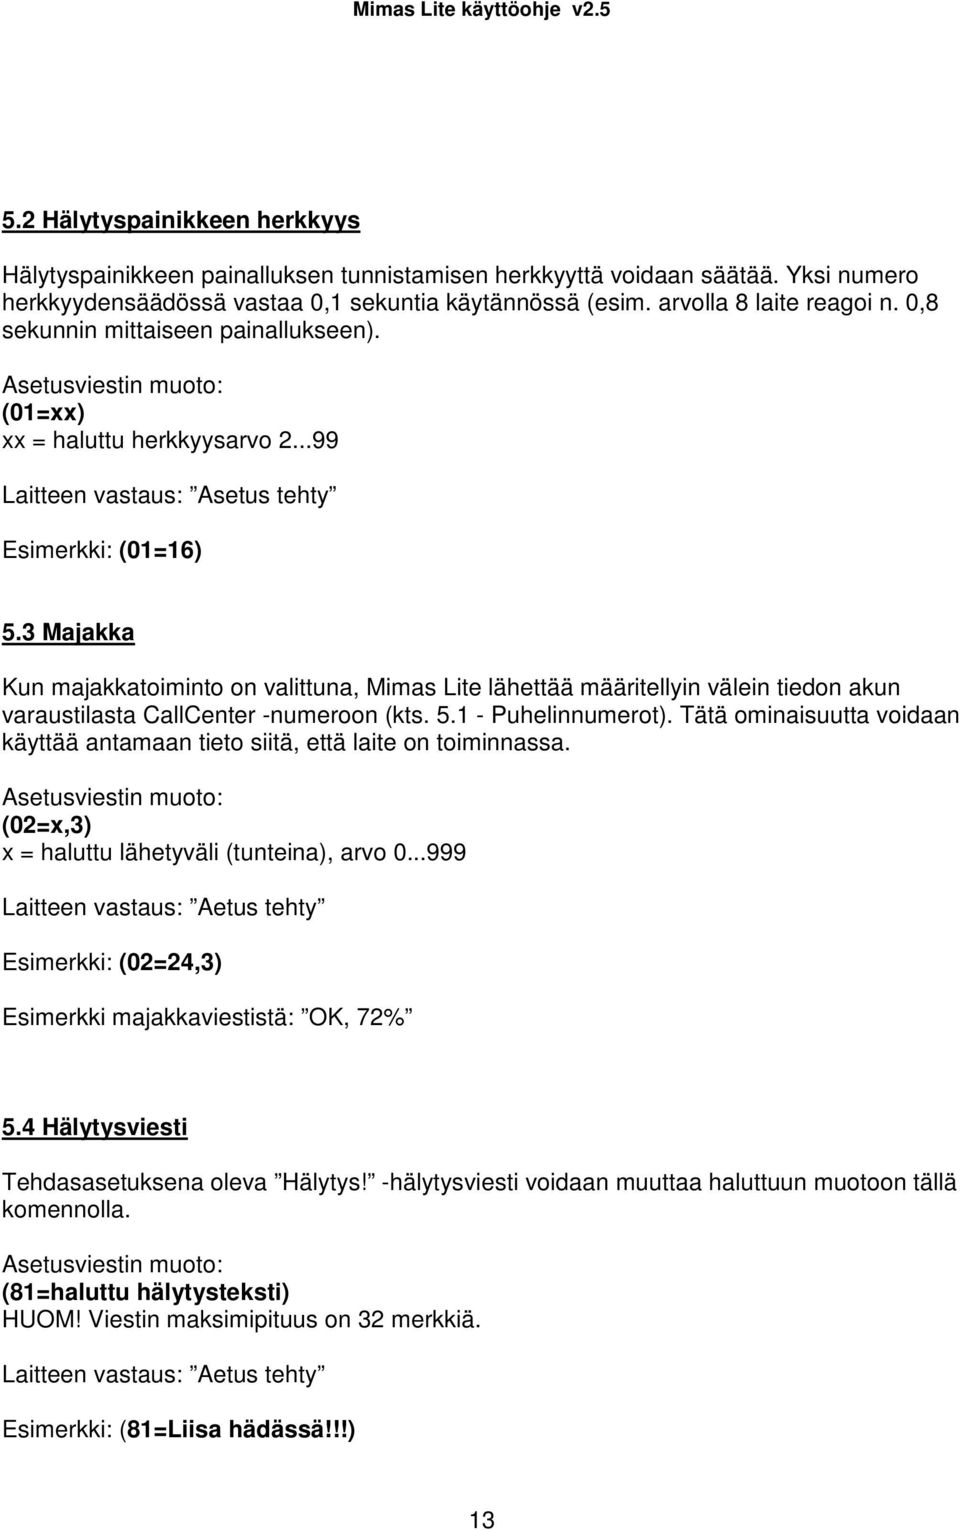 3 Majakka Kun majakkatoiminto on valittuna, Mimas Lite lähettää määritellyin välein tiedon akun varaustilasta CallCenter -numeroon (kts. 5.1 - Puhelinnumerot).